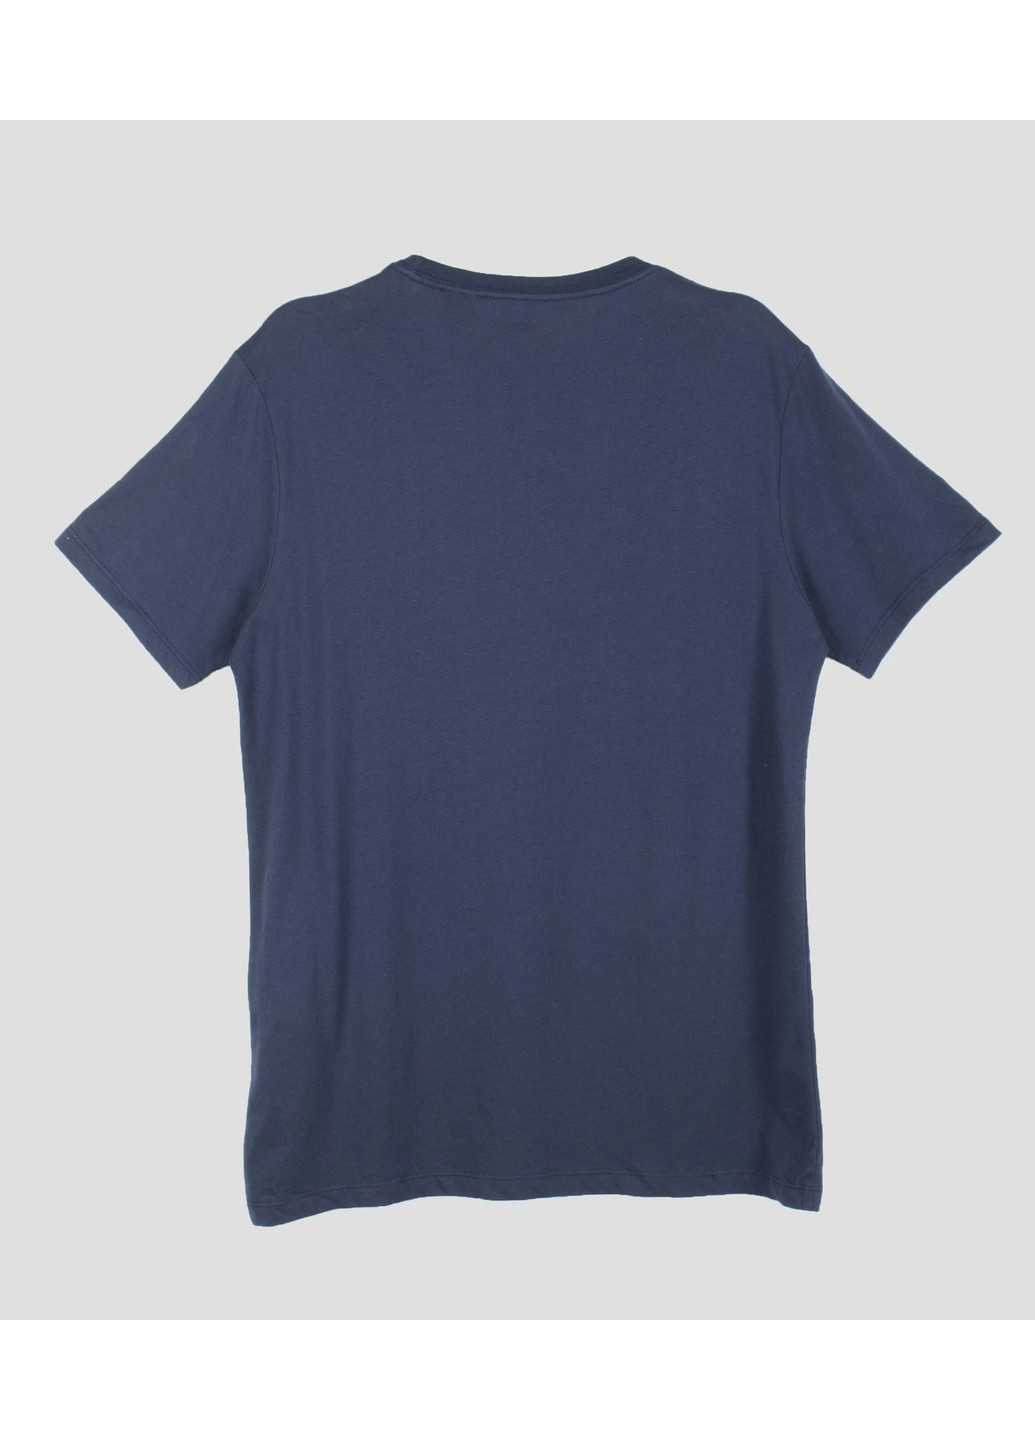 Синяя футболка levis базовая Levi's